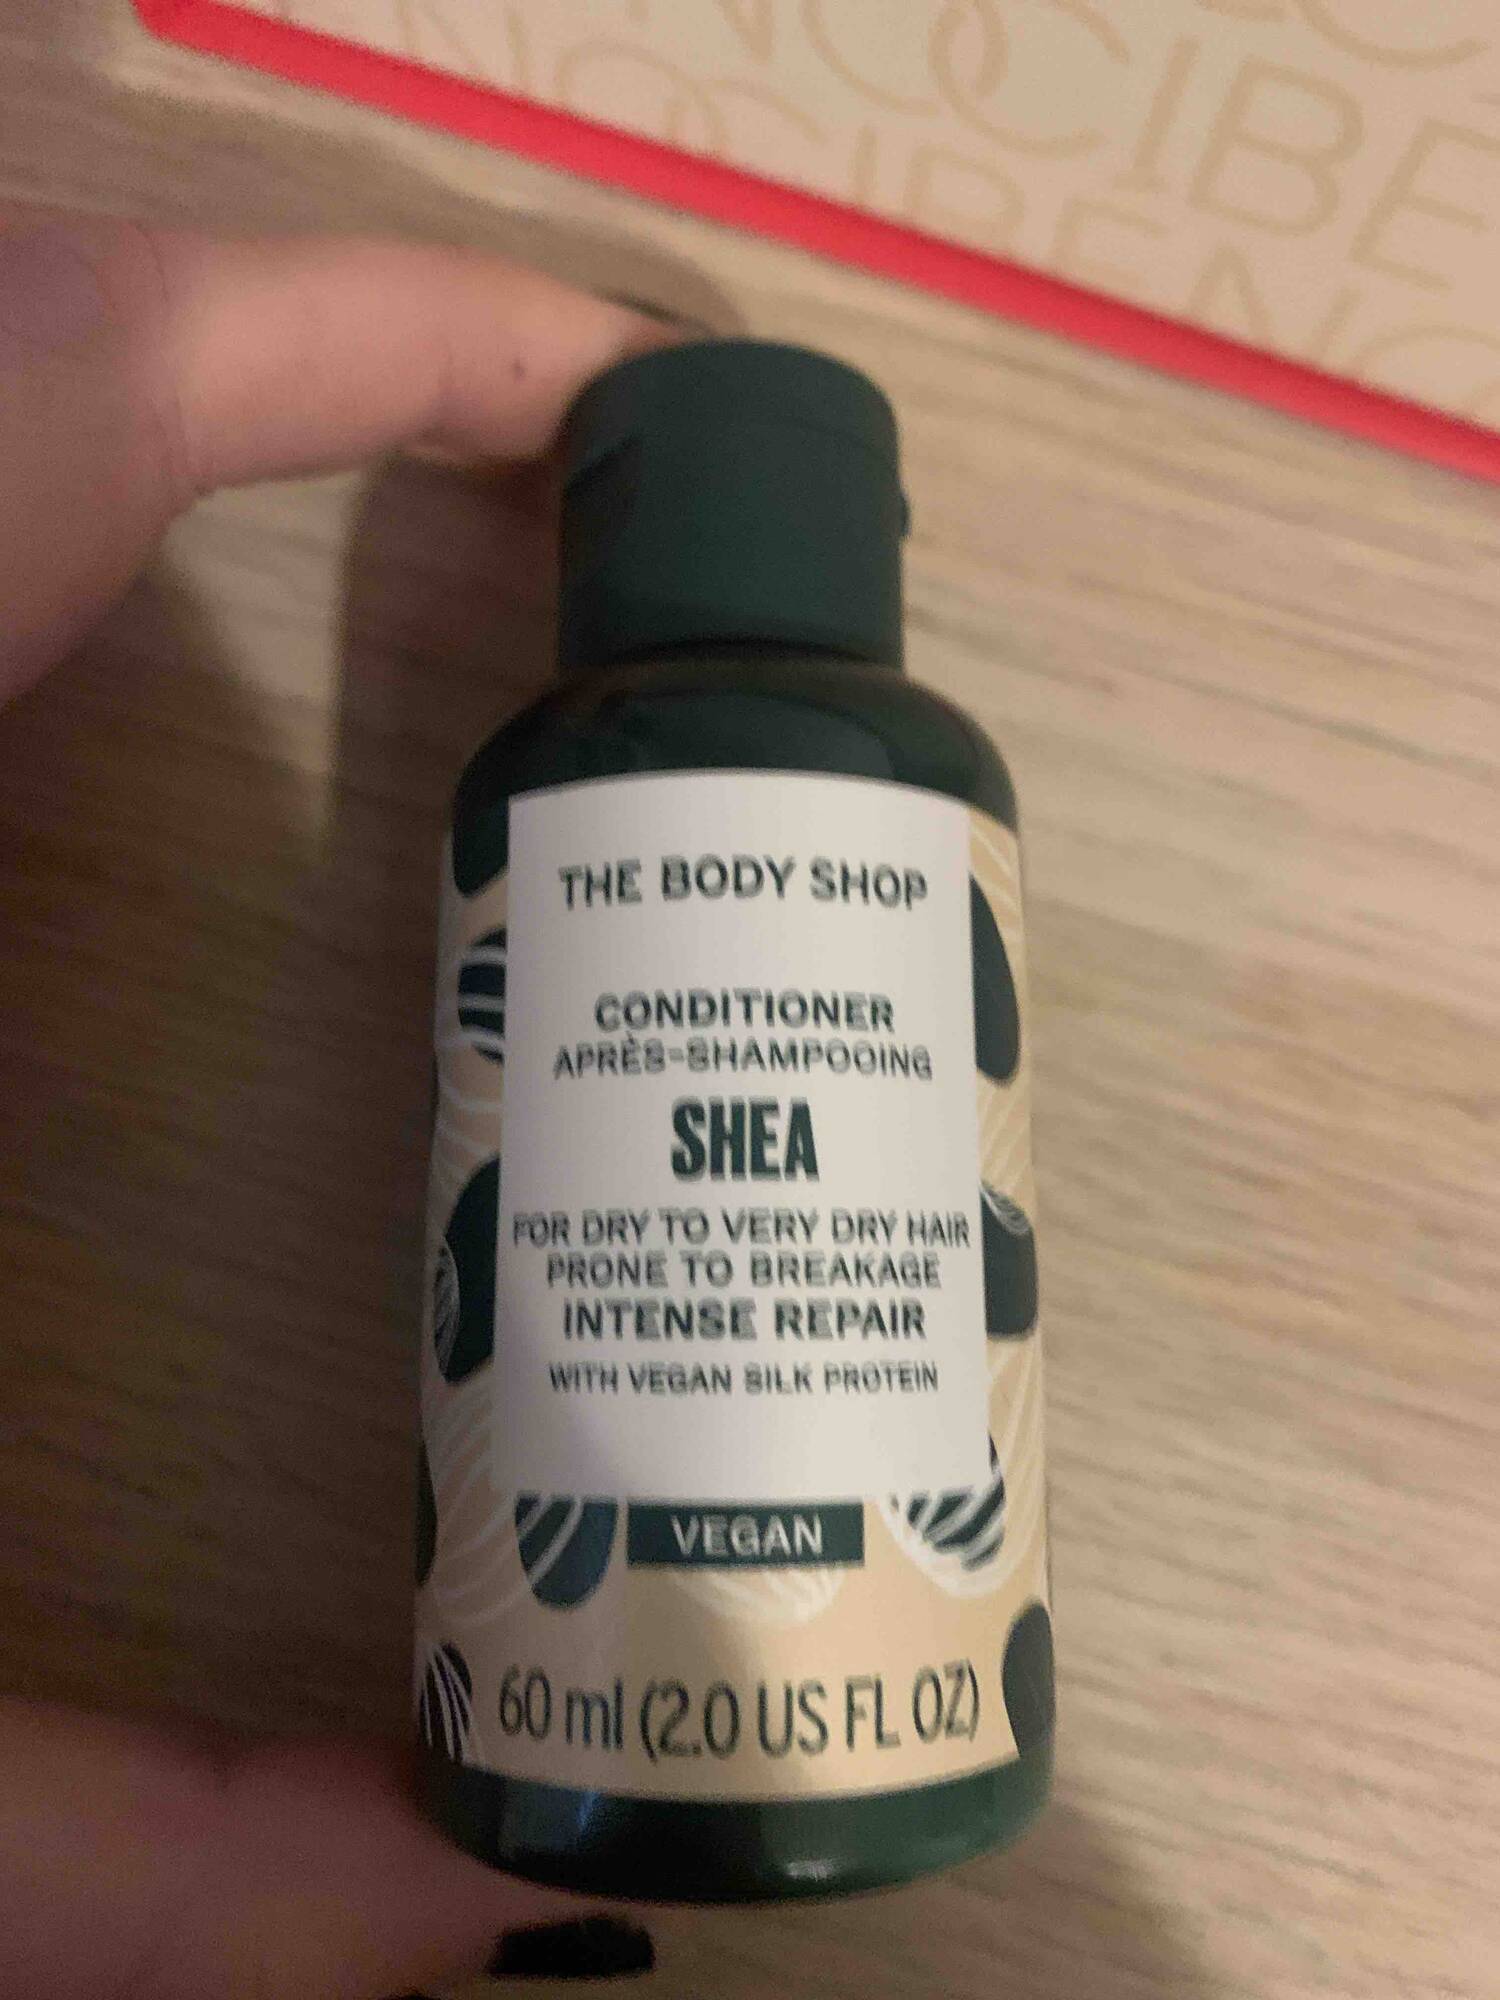 THE BODY SHOP - Après-shampooing shea